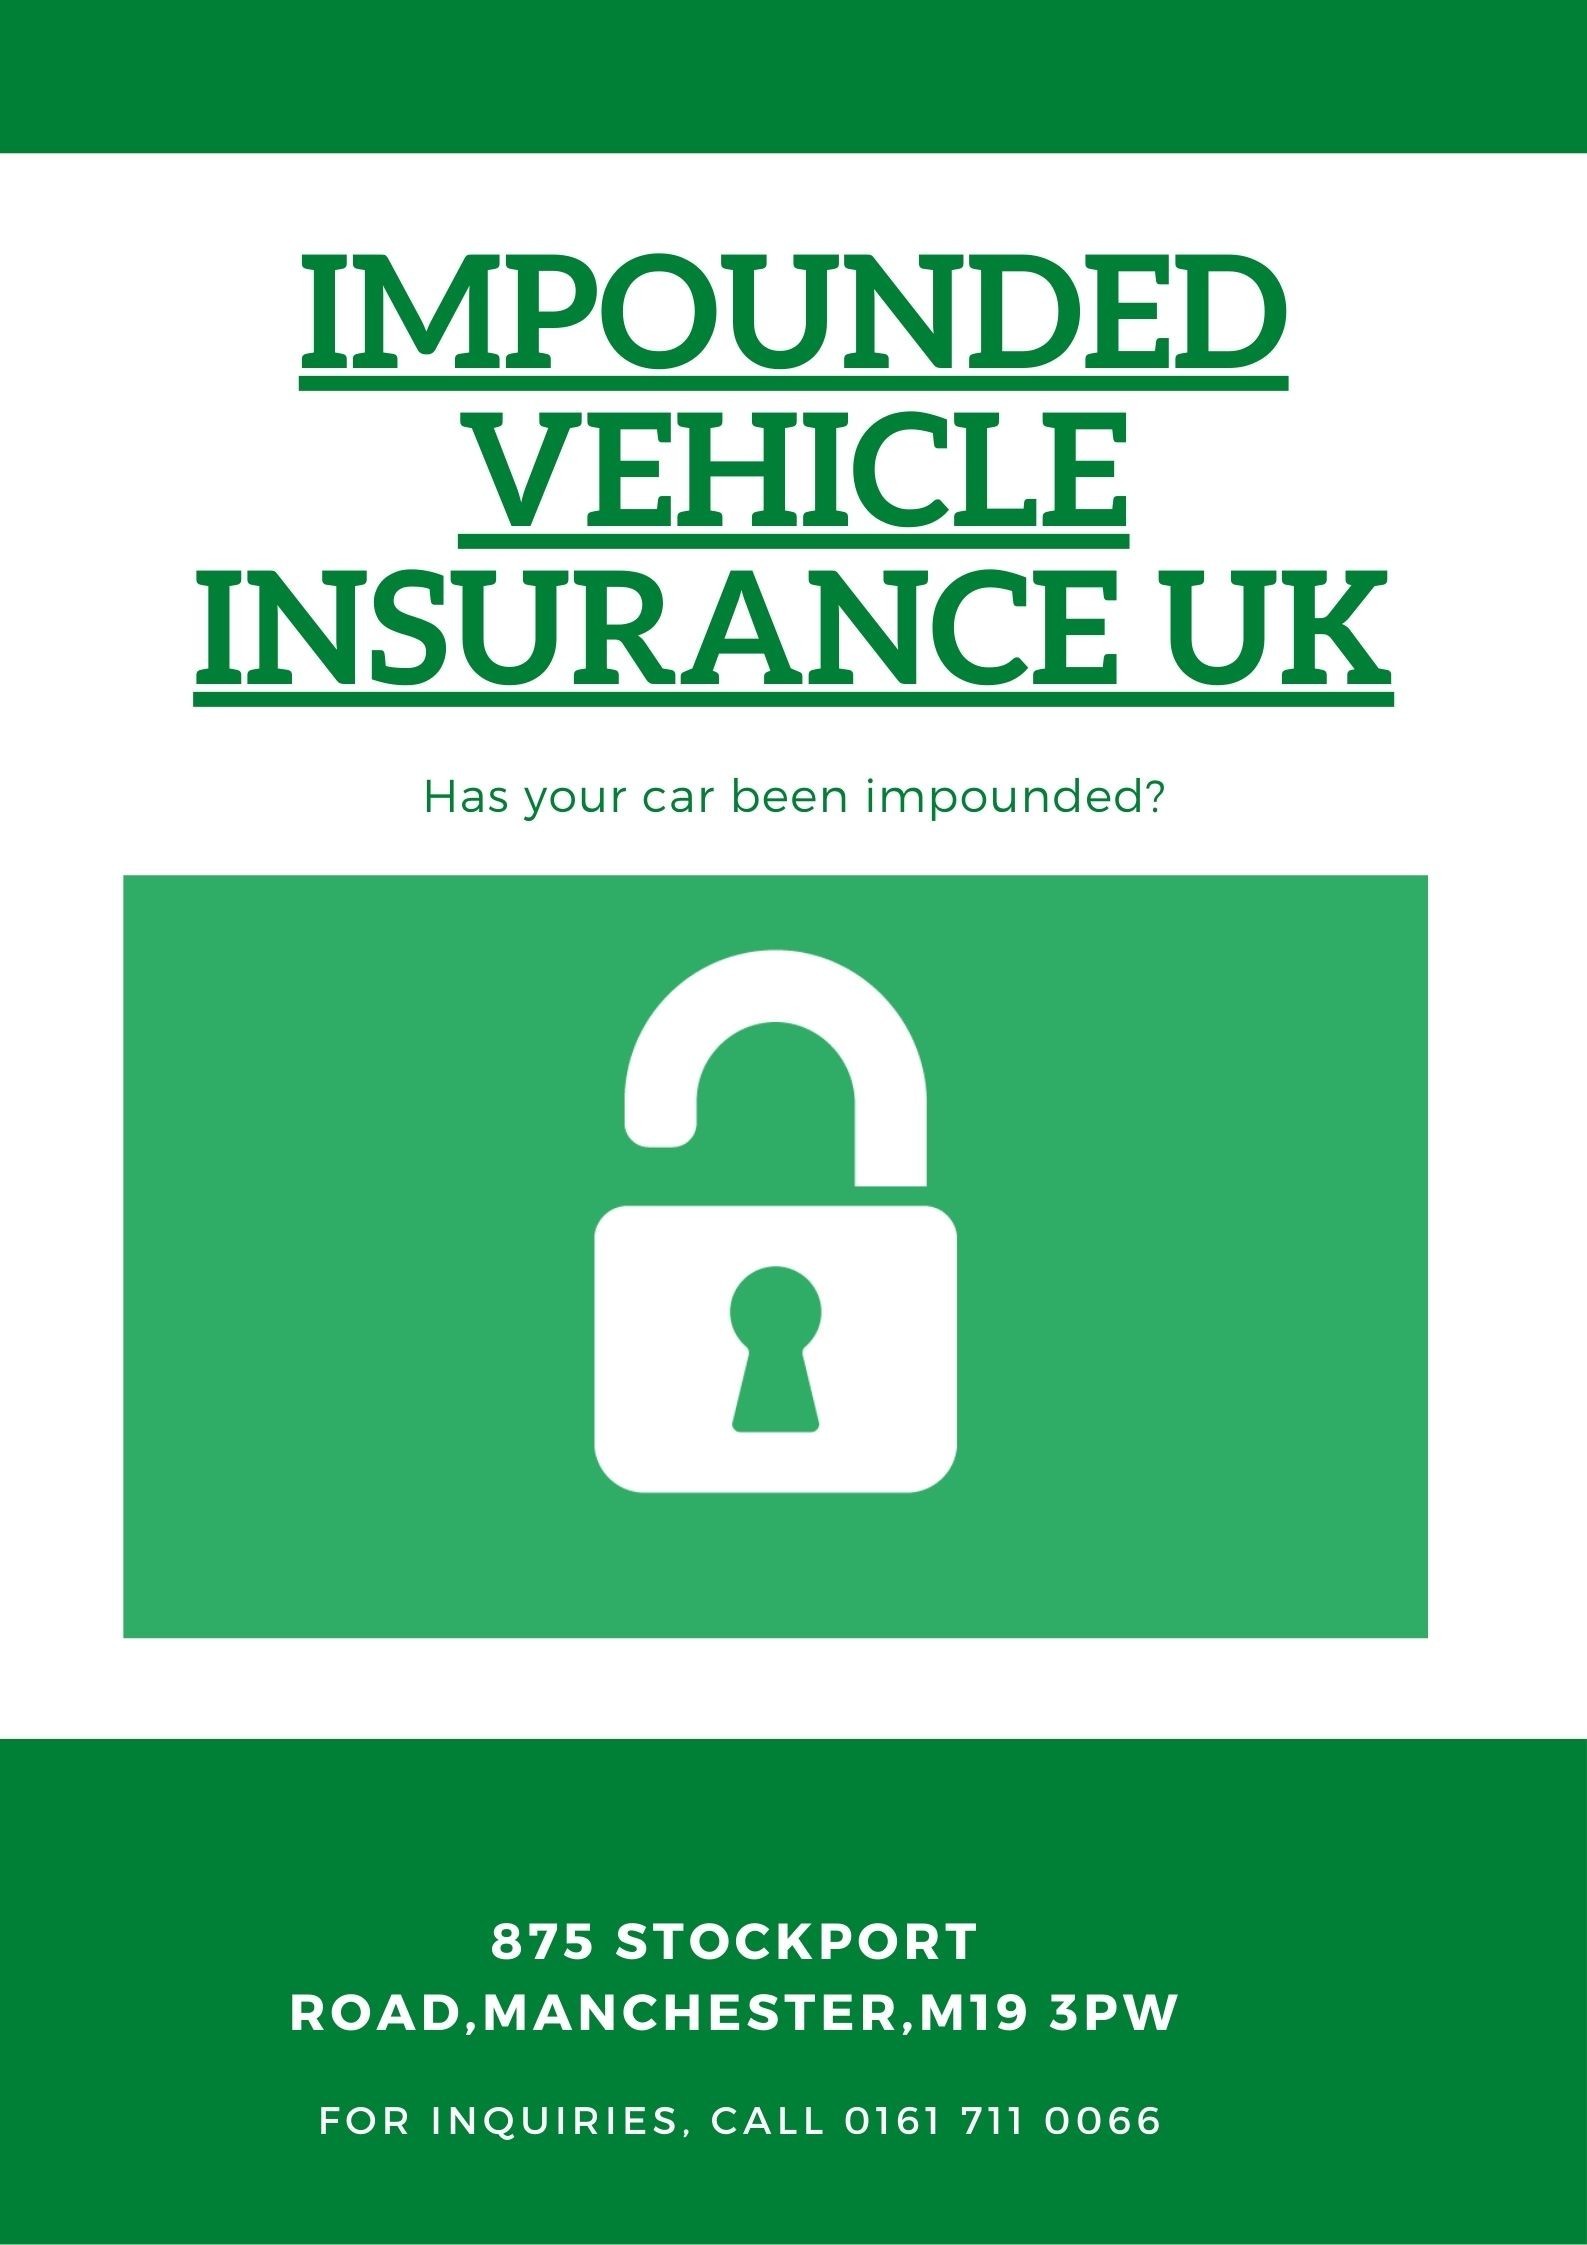 |Impounded Vehicle Insurance UK| Release My Vehicle